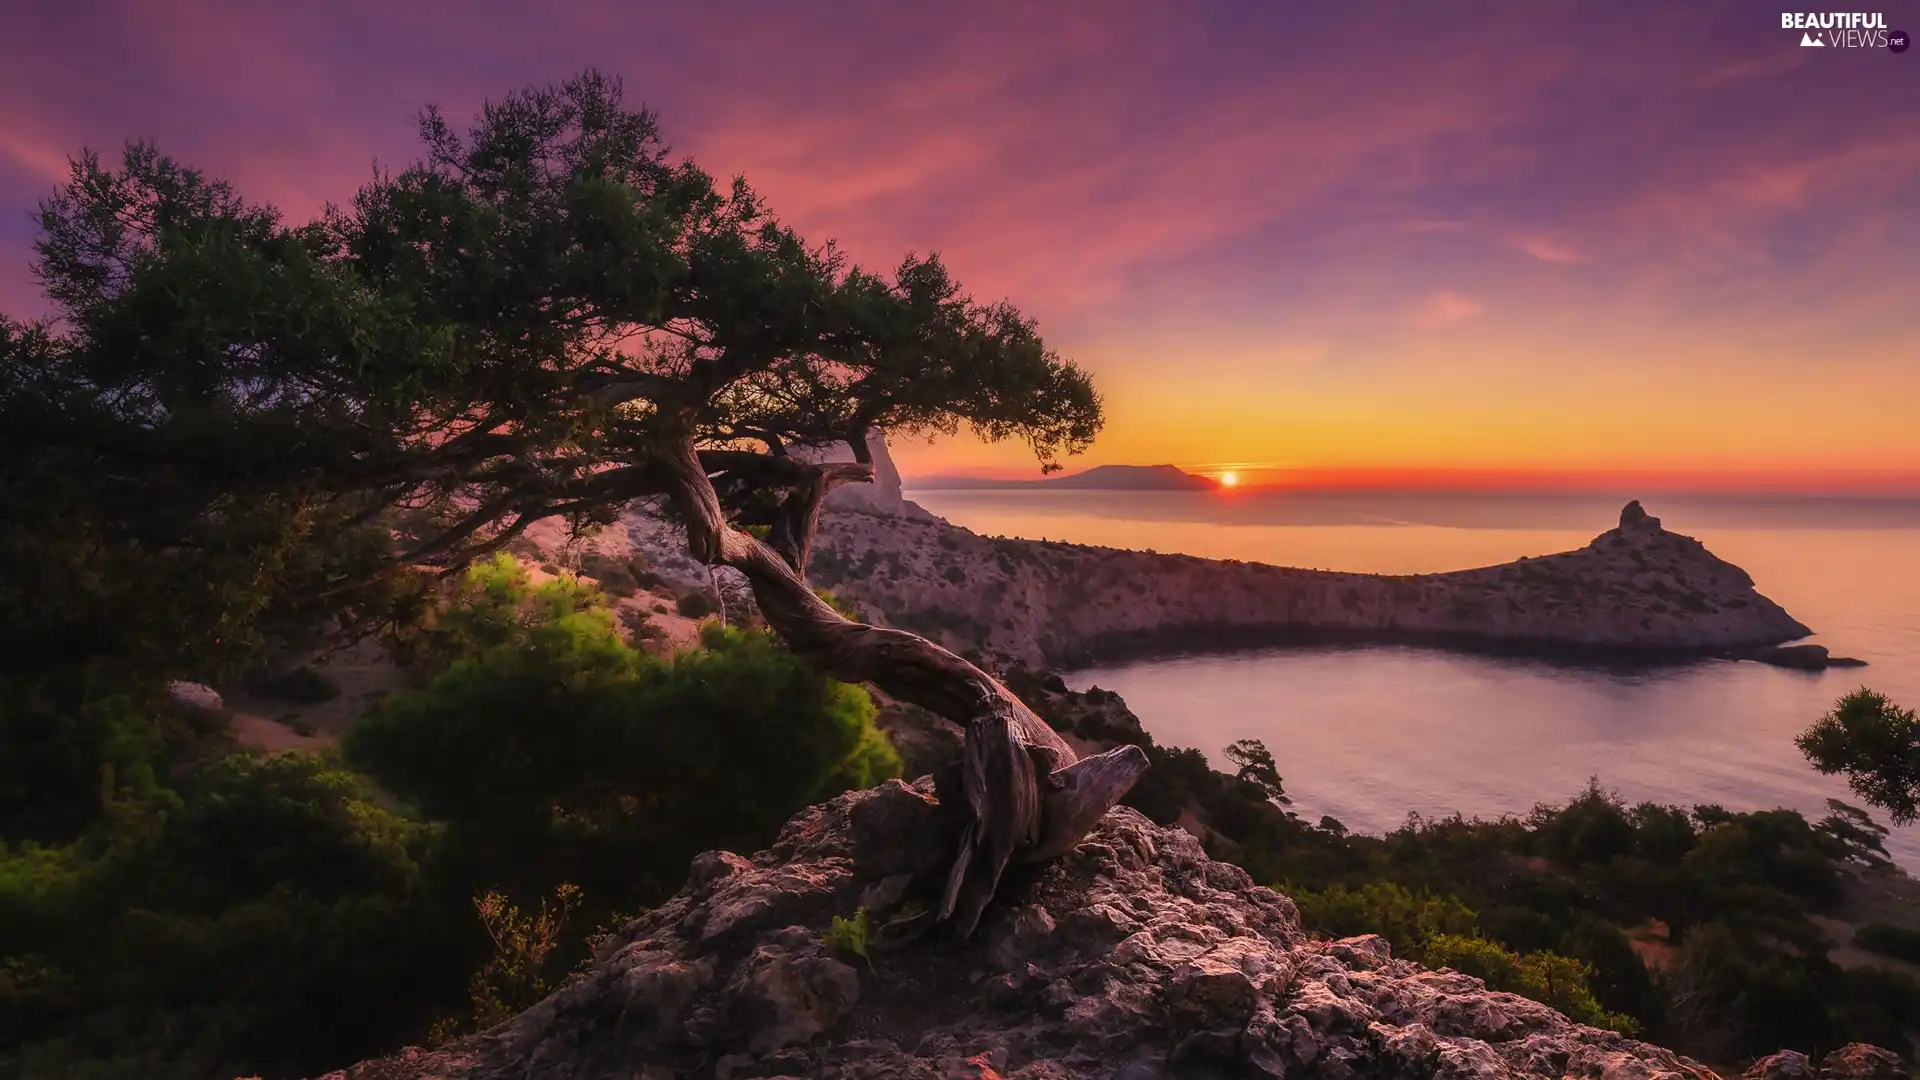 Coast, rocks, Crimea, trees, VEGETATION, Great Sunsets, Black Sea, pine